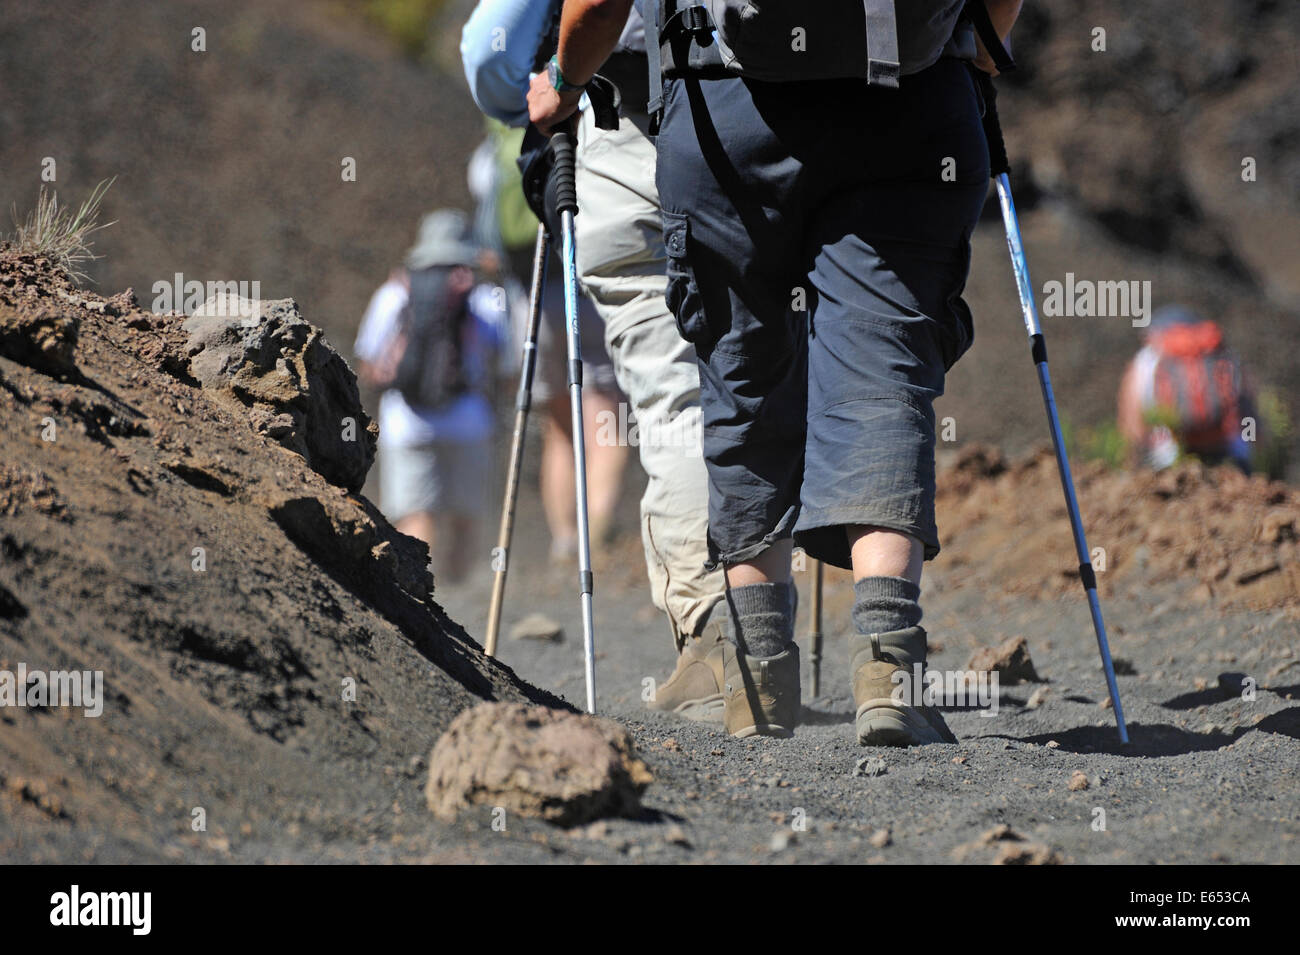 Persone passeggiate ed escursioni sul Vulcano Trail nel cratere Haleakala, Maui isola, isole Hawaii, STATI UNITI D'AMERICA Foto Stock